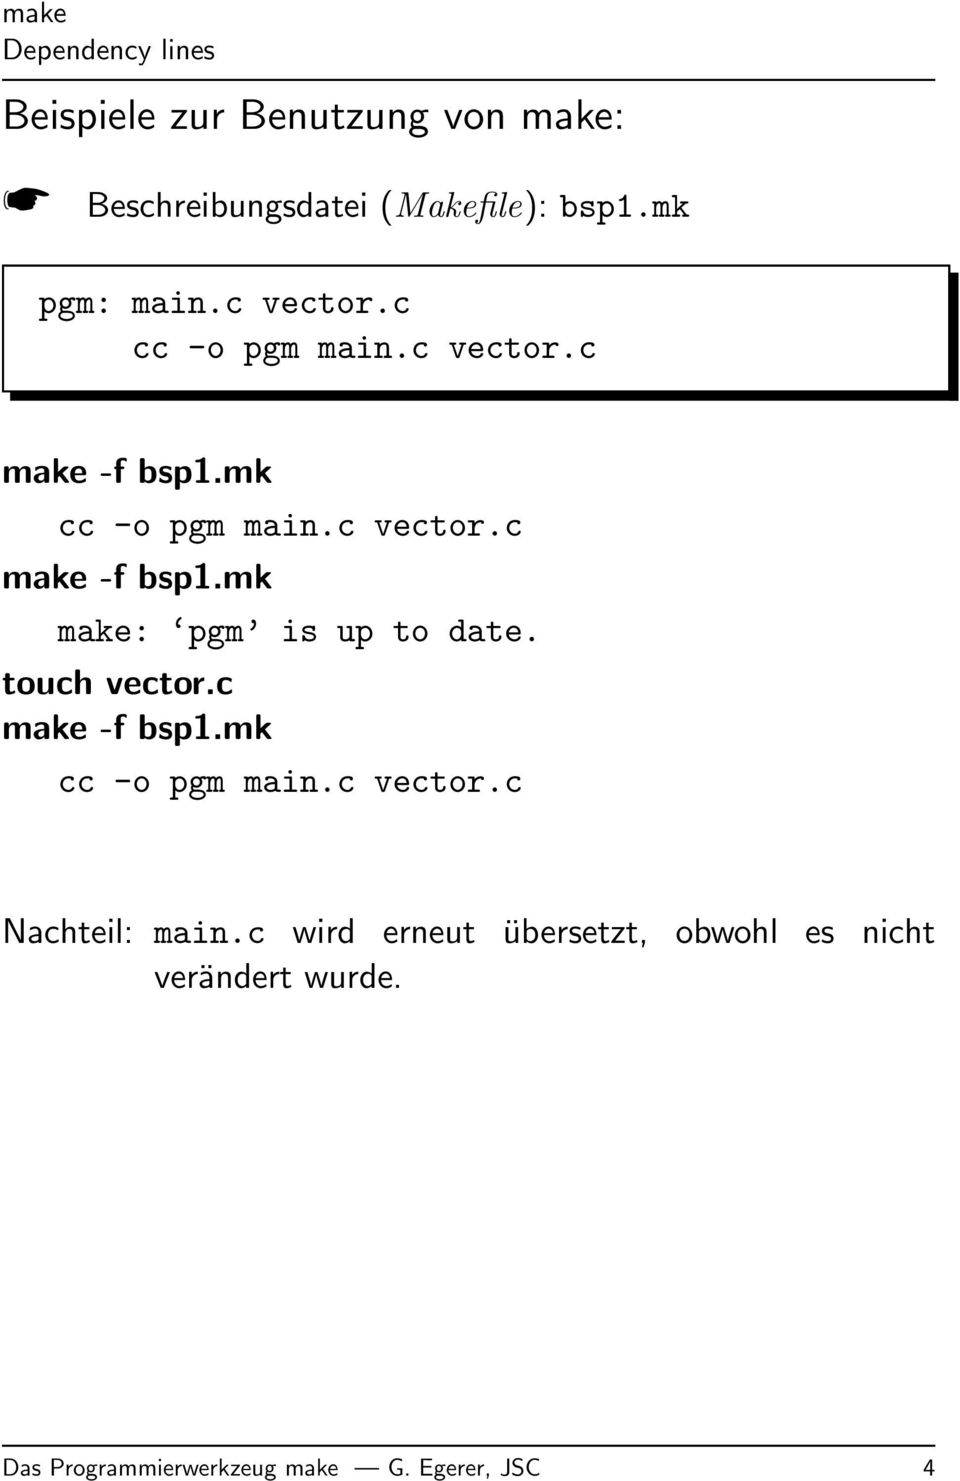 touch vector.c make -f bsp1.mk cc -o pgm main.c vector.c Nachteil: main.